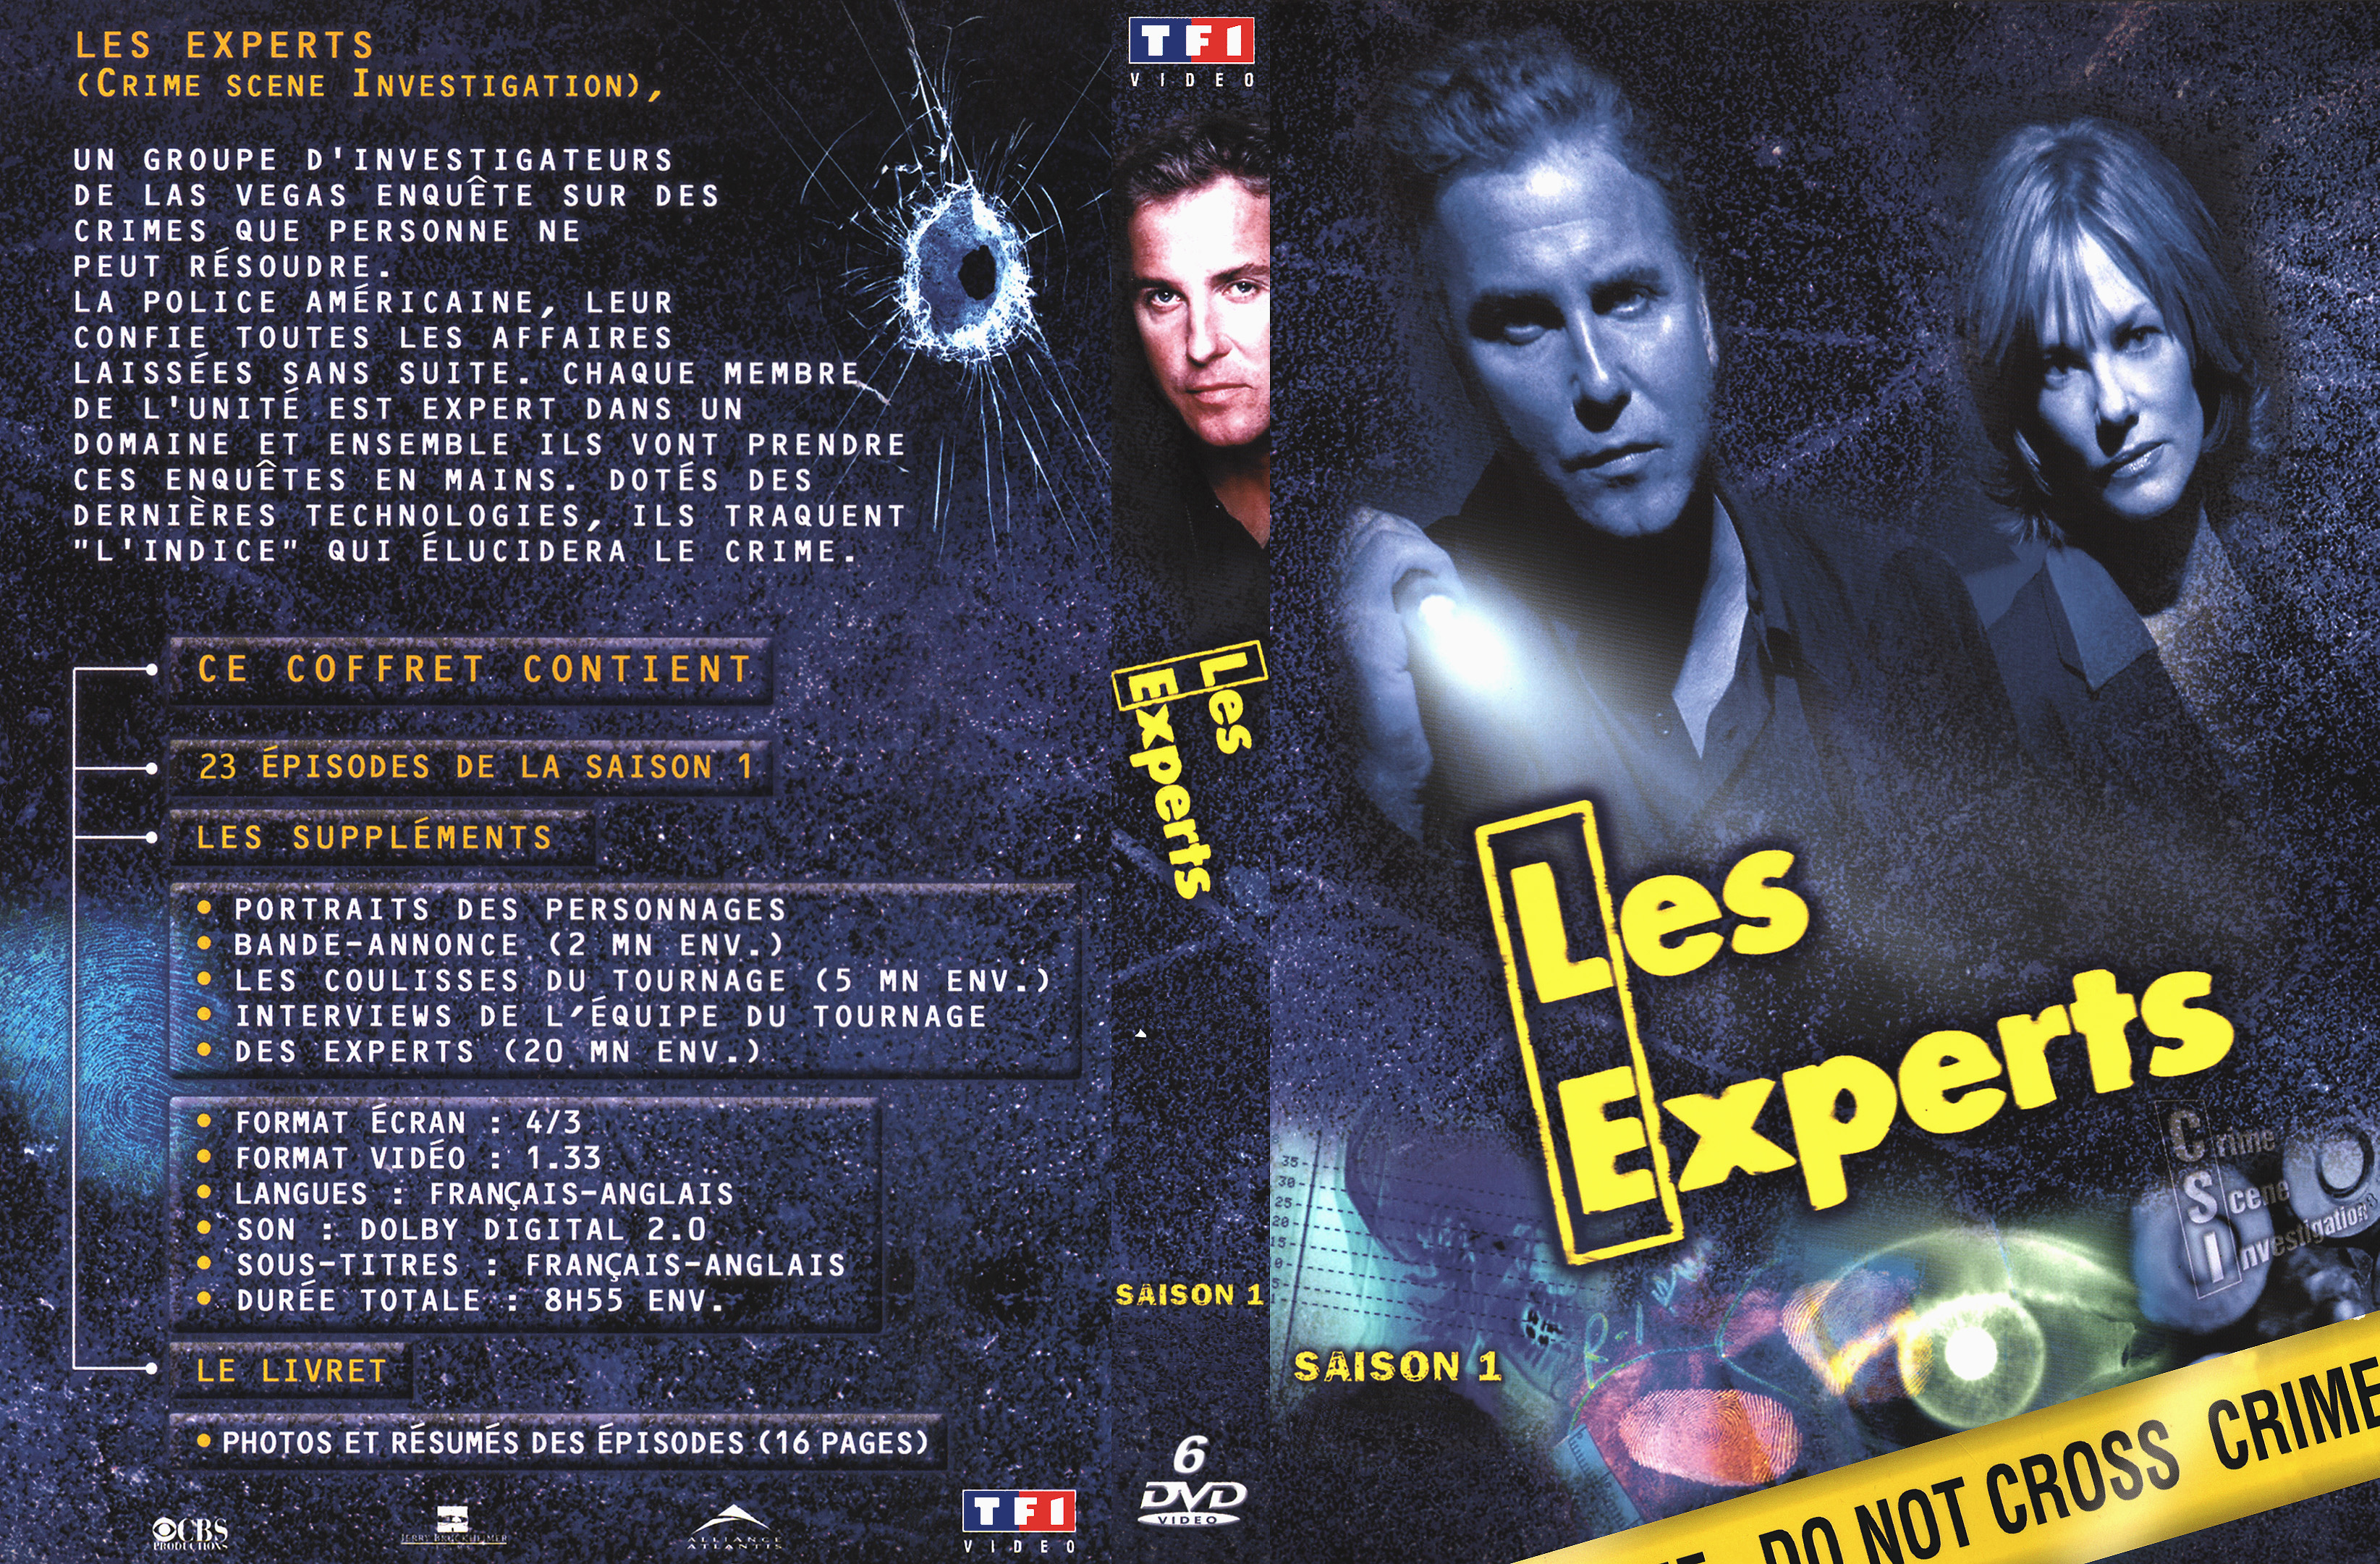 Jaquette DVD Les experts Saison 1 COFFRET